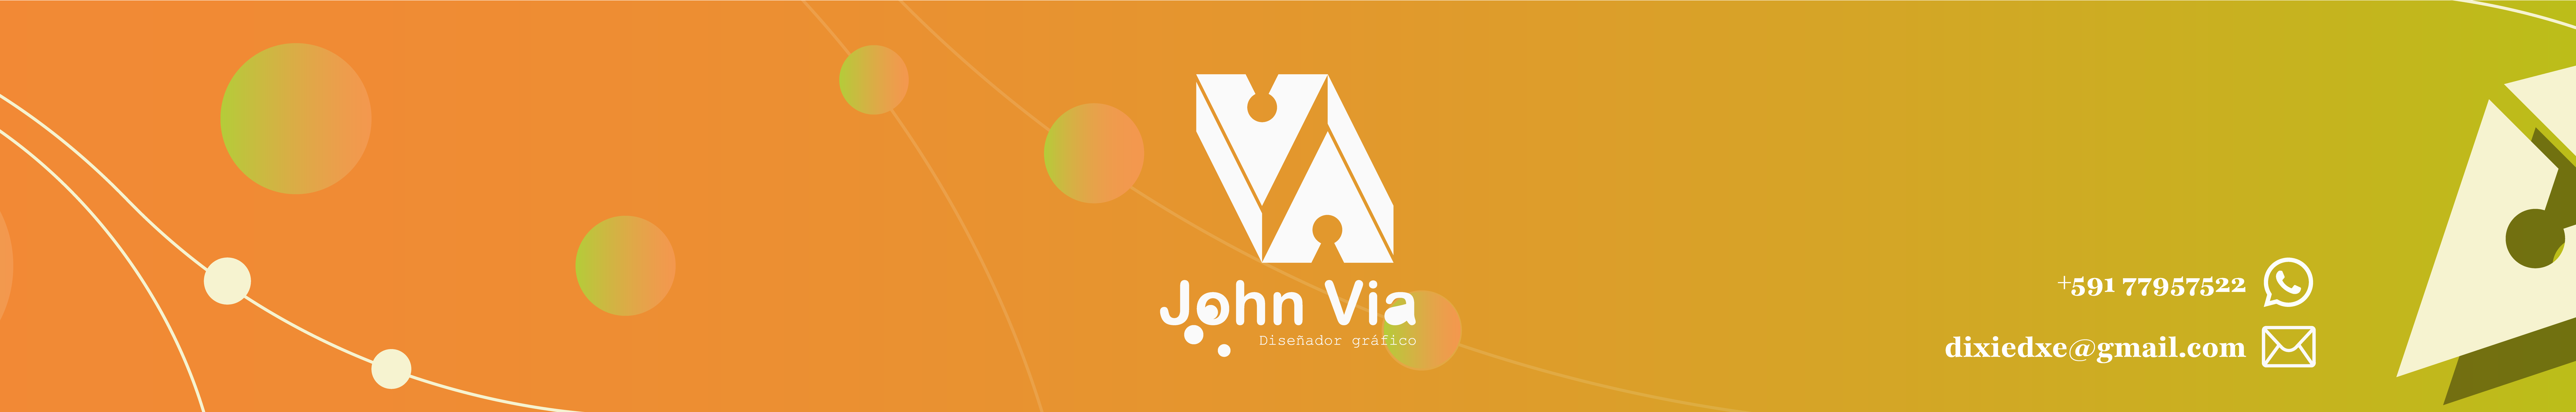 Banner de perfil de John Via